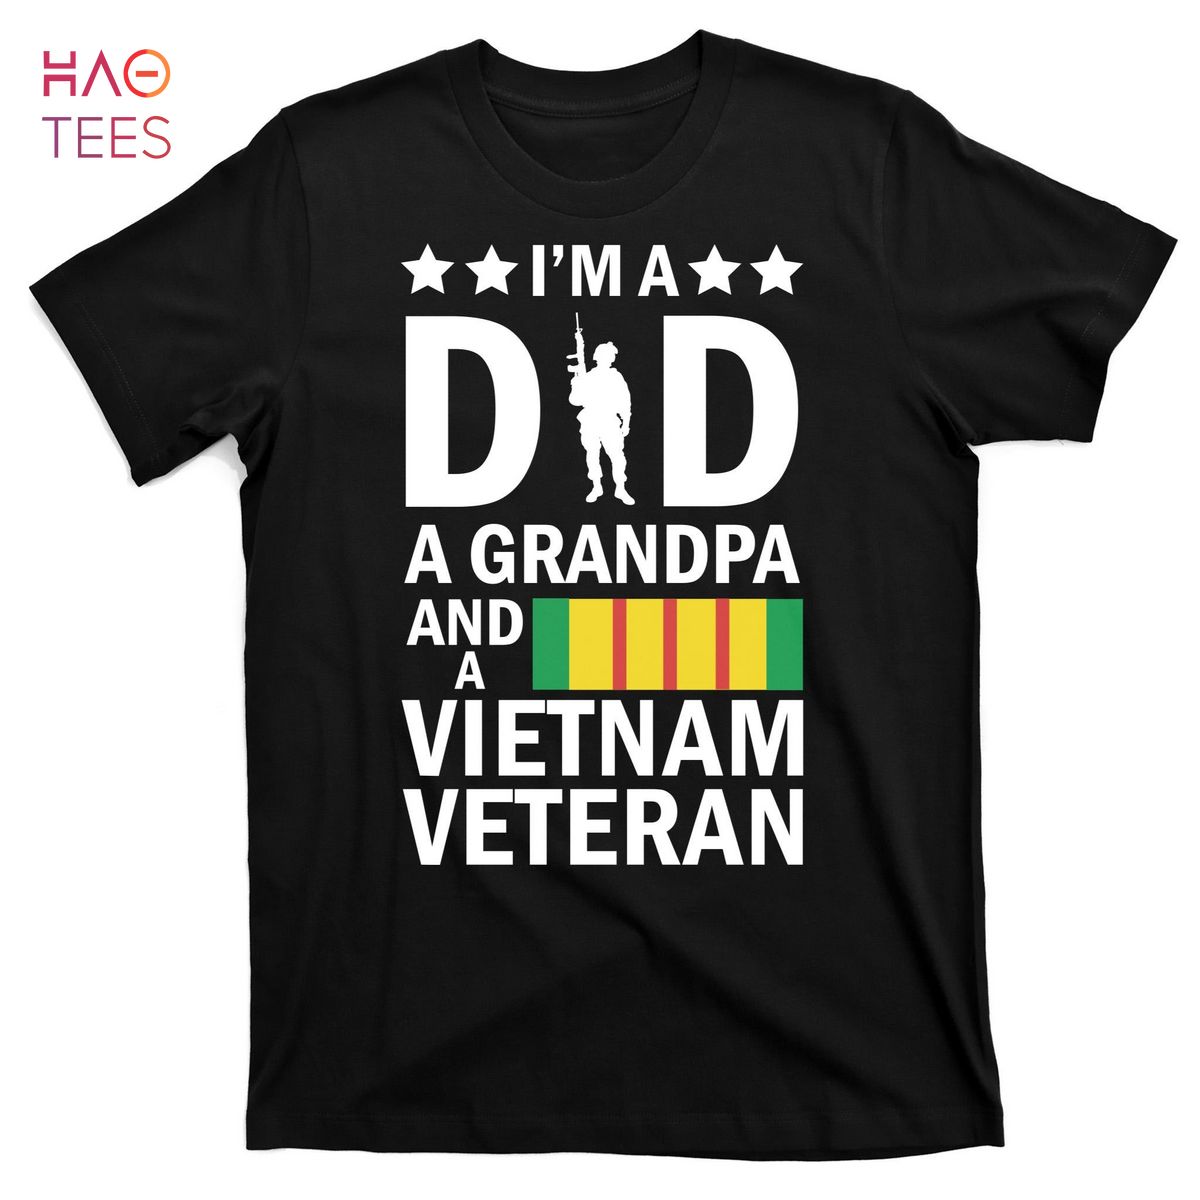 HOT I'm A Dad A Grandpa and A Vietnam Veteran T-Shirts